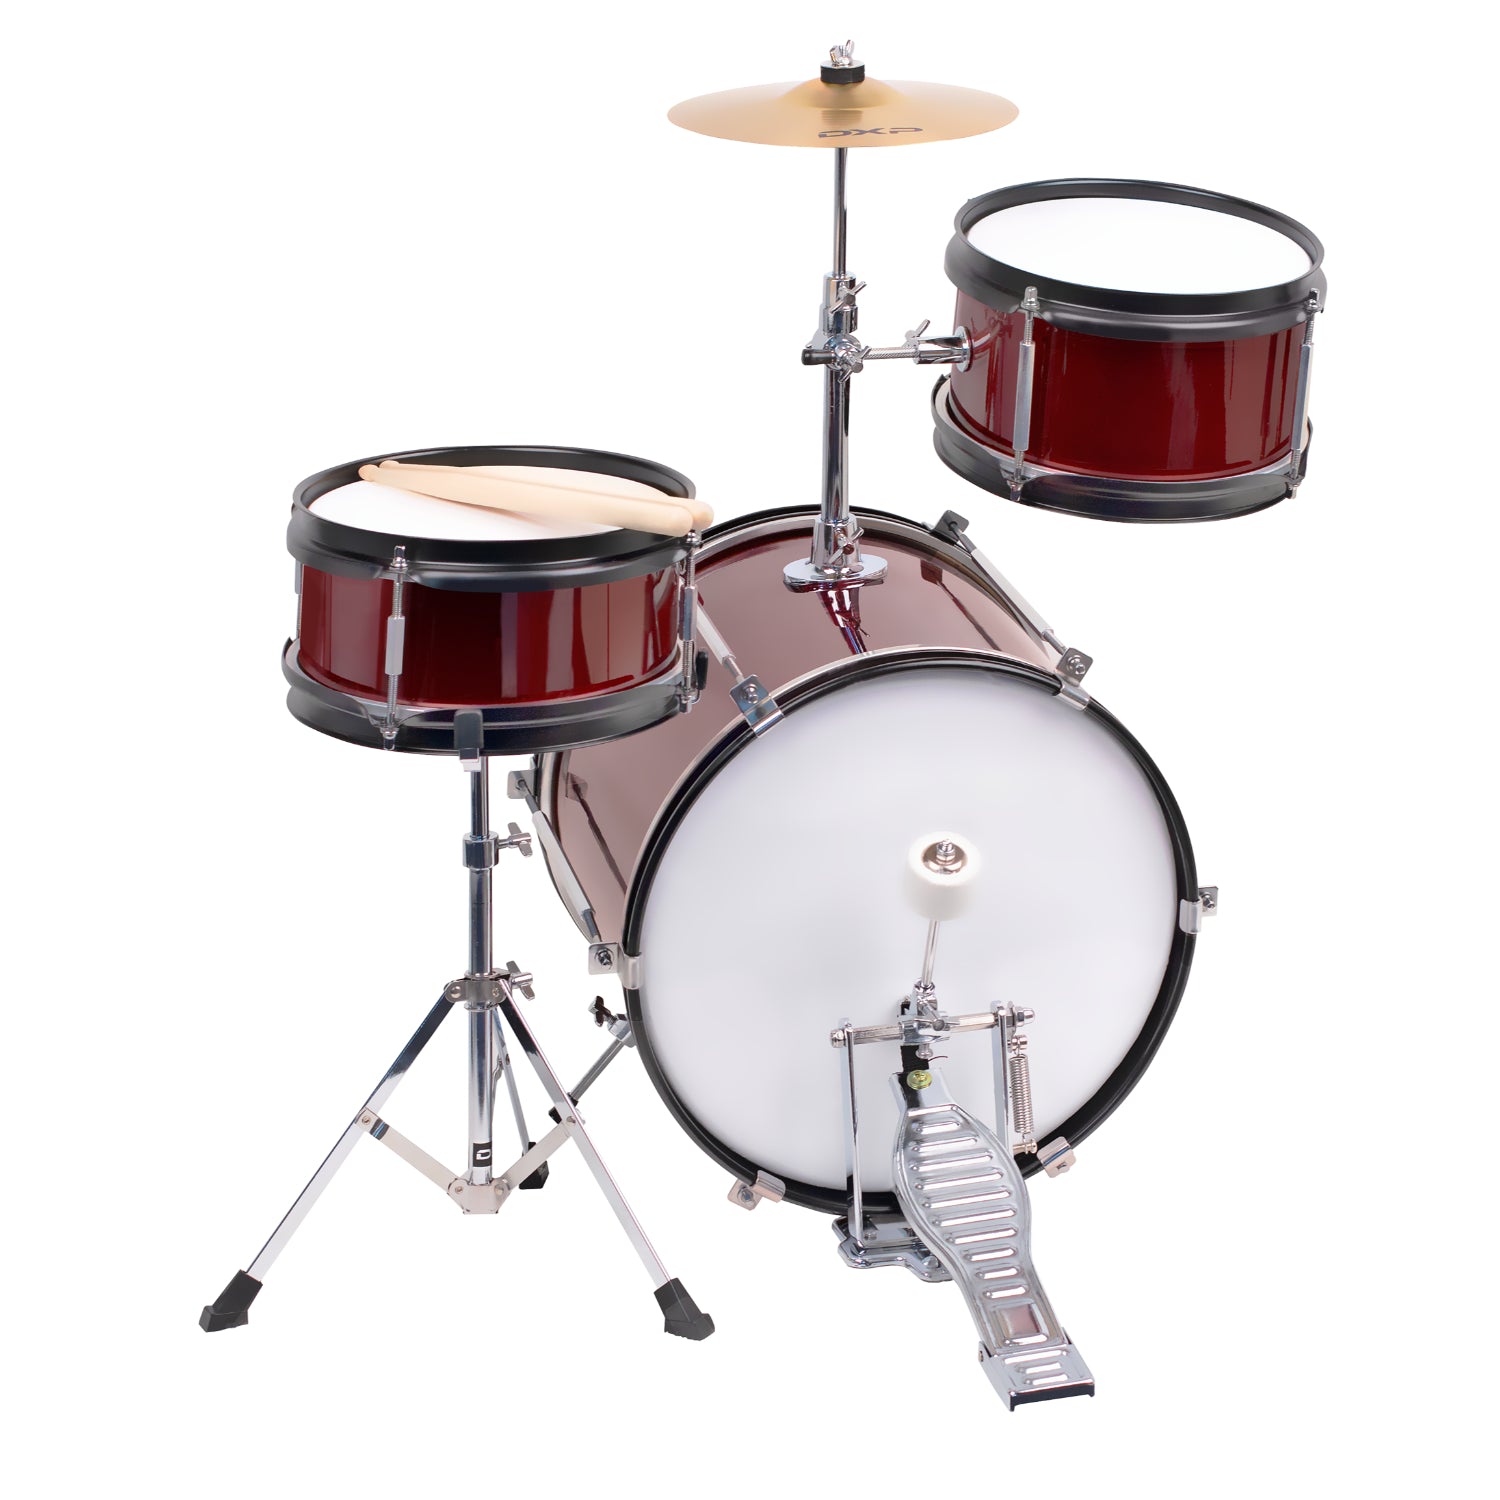 DXP 3-Piece Junior Drum Kit